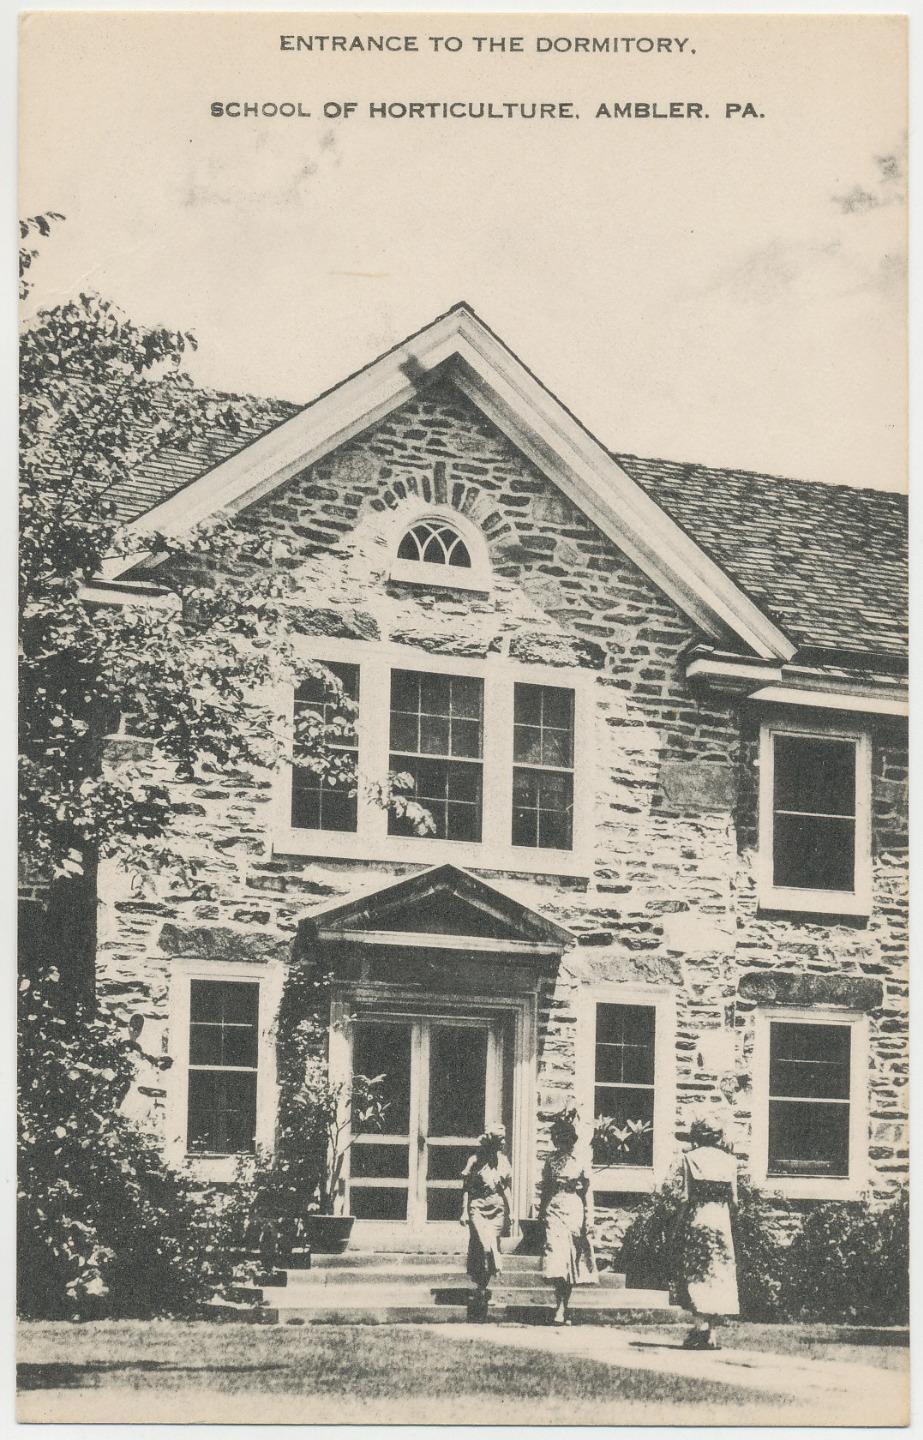 ca1940s-50s Ambler PA - School of Horticulture Dormitory Entrance